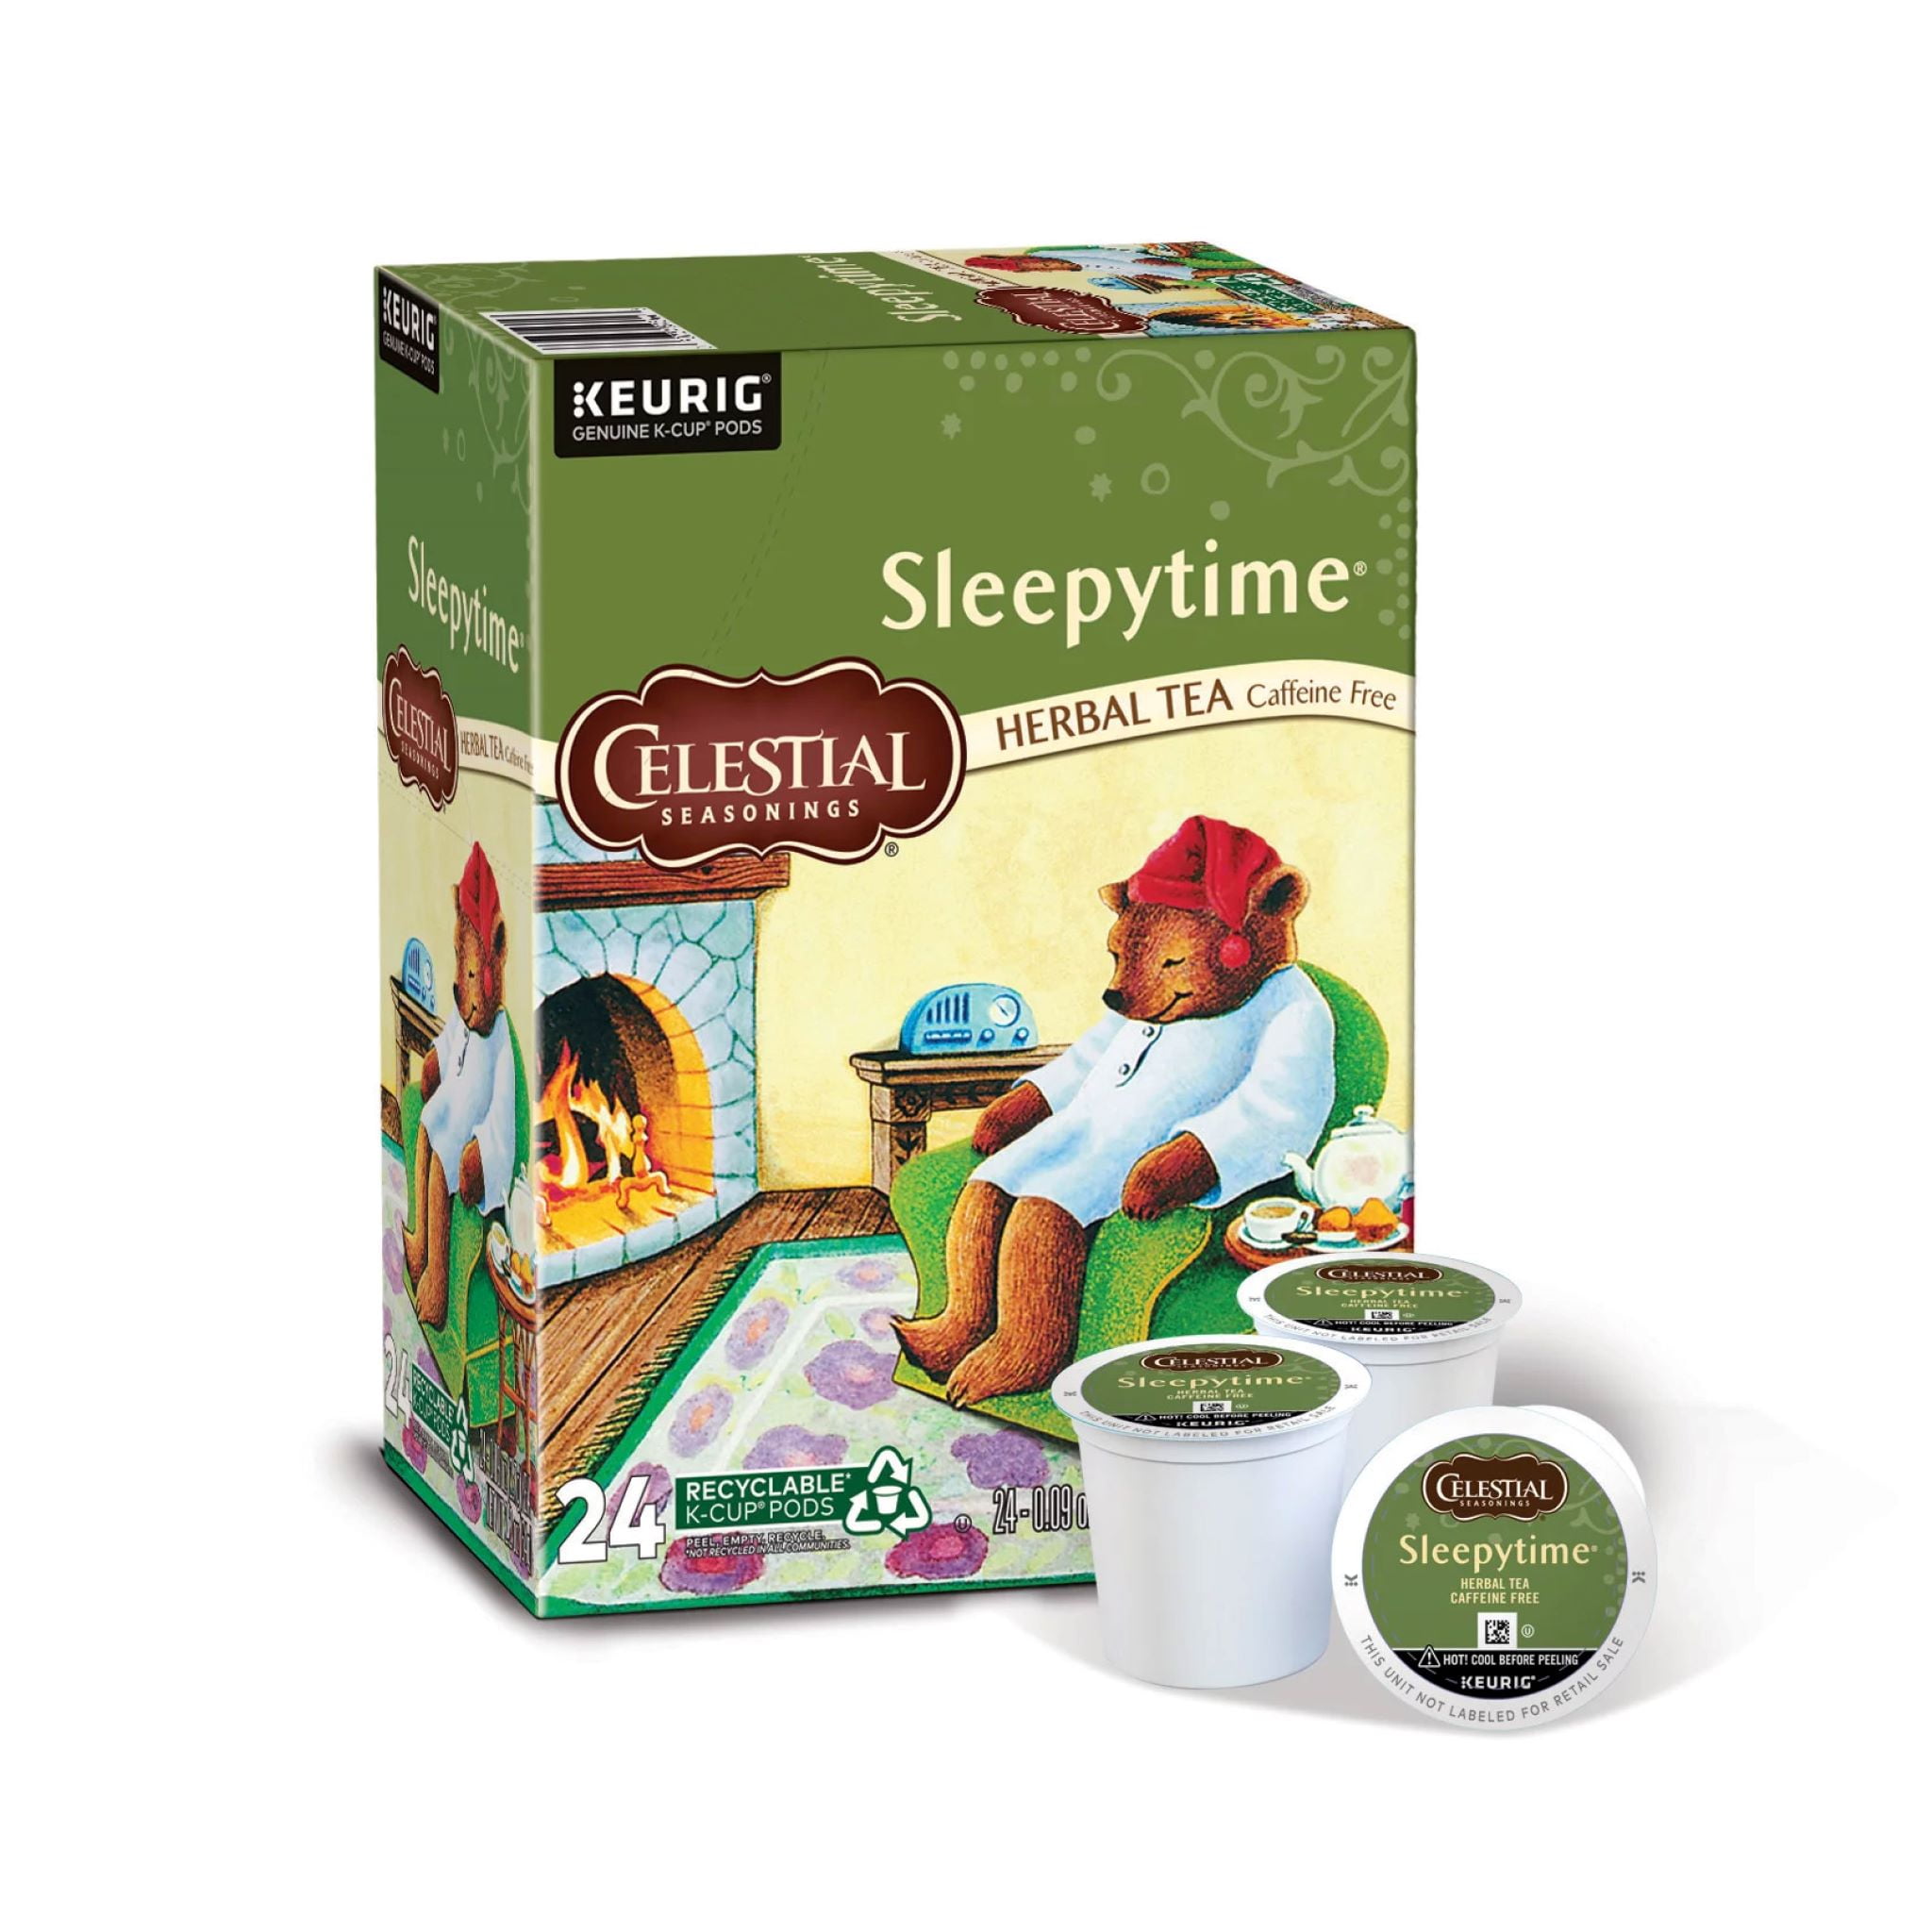 Celestial Seasonings Sleepytime Caffeine-Free Herbal Tea K-Cup Pods, 24 Count